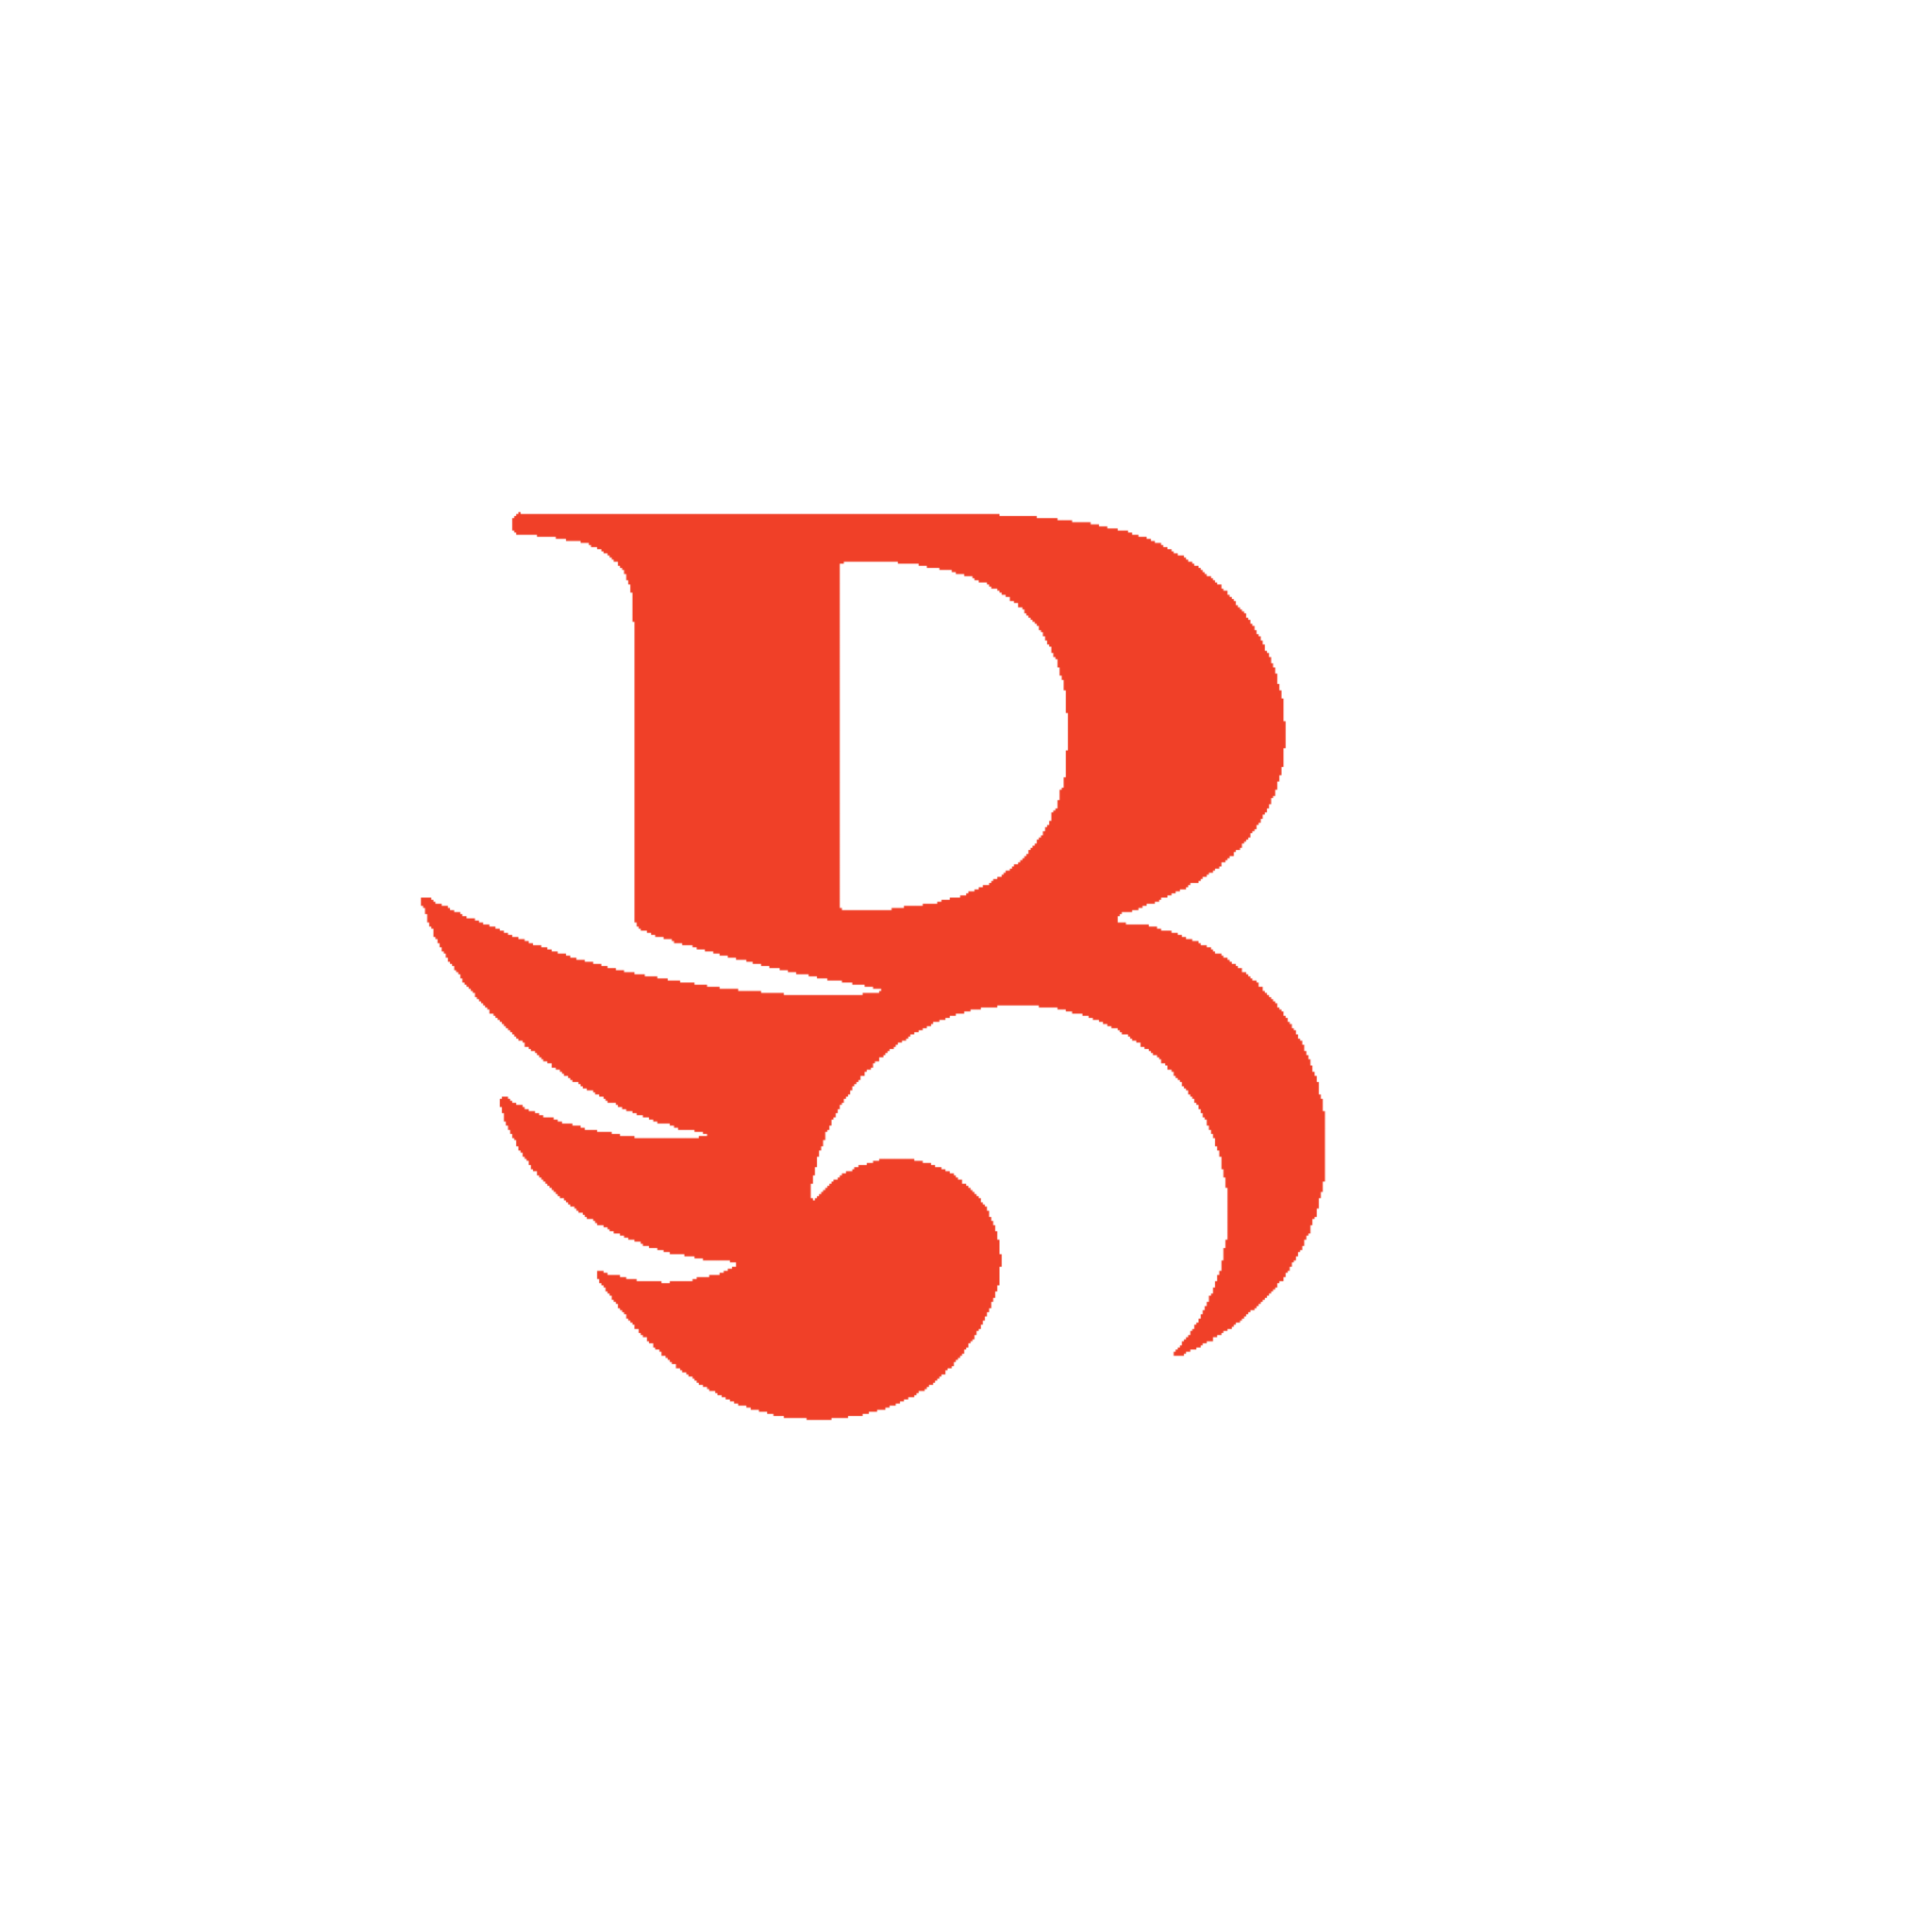 Love birds logo